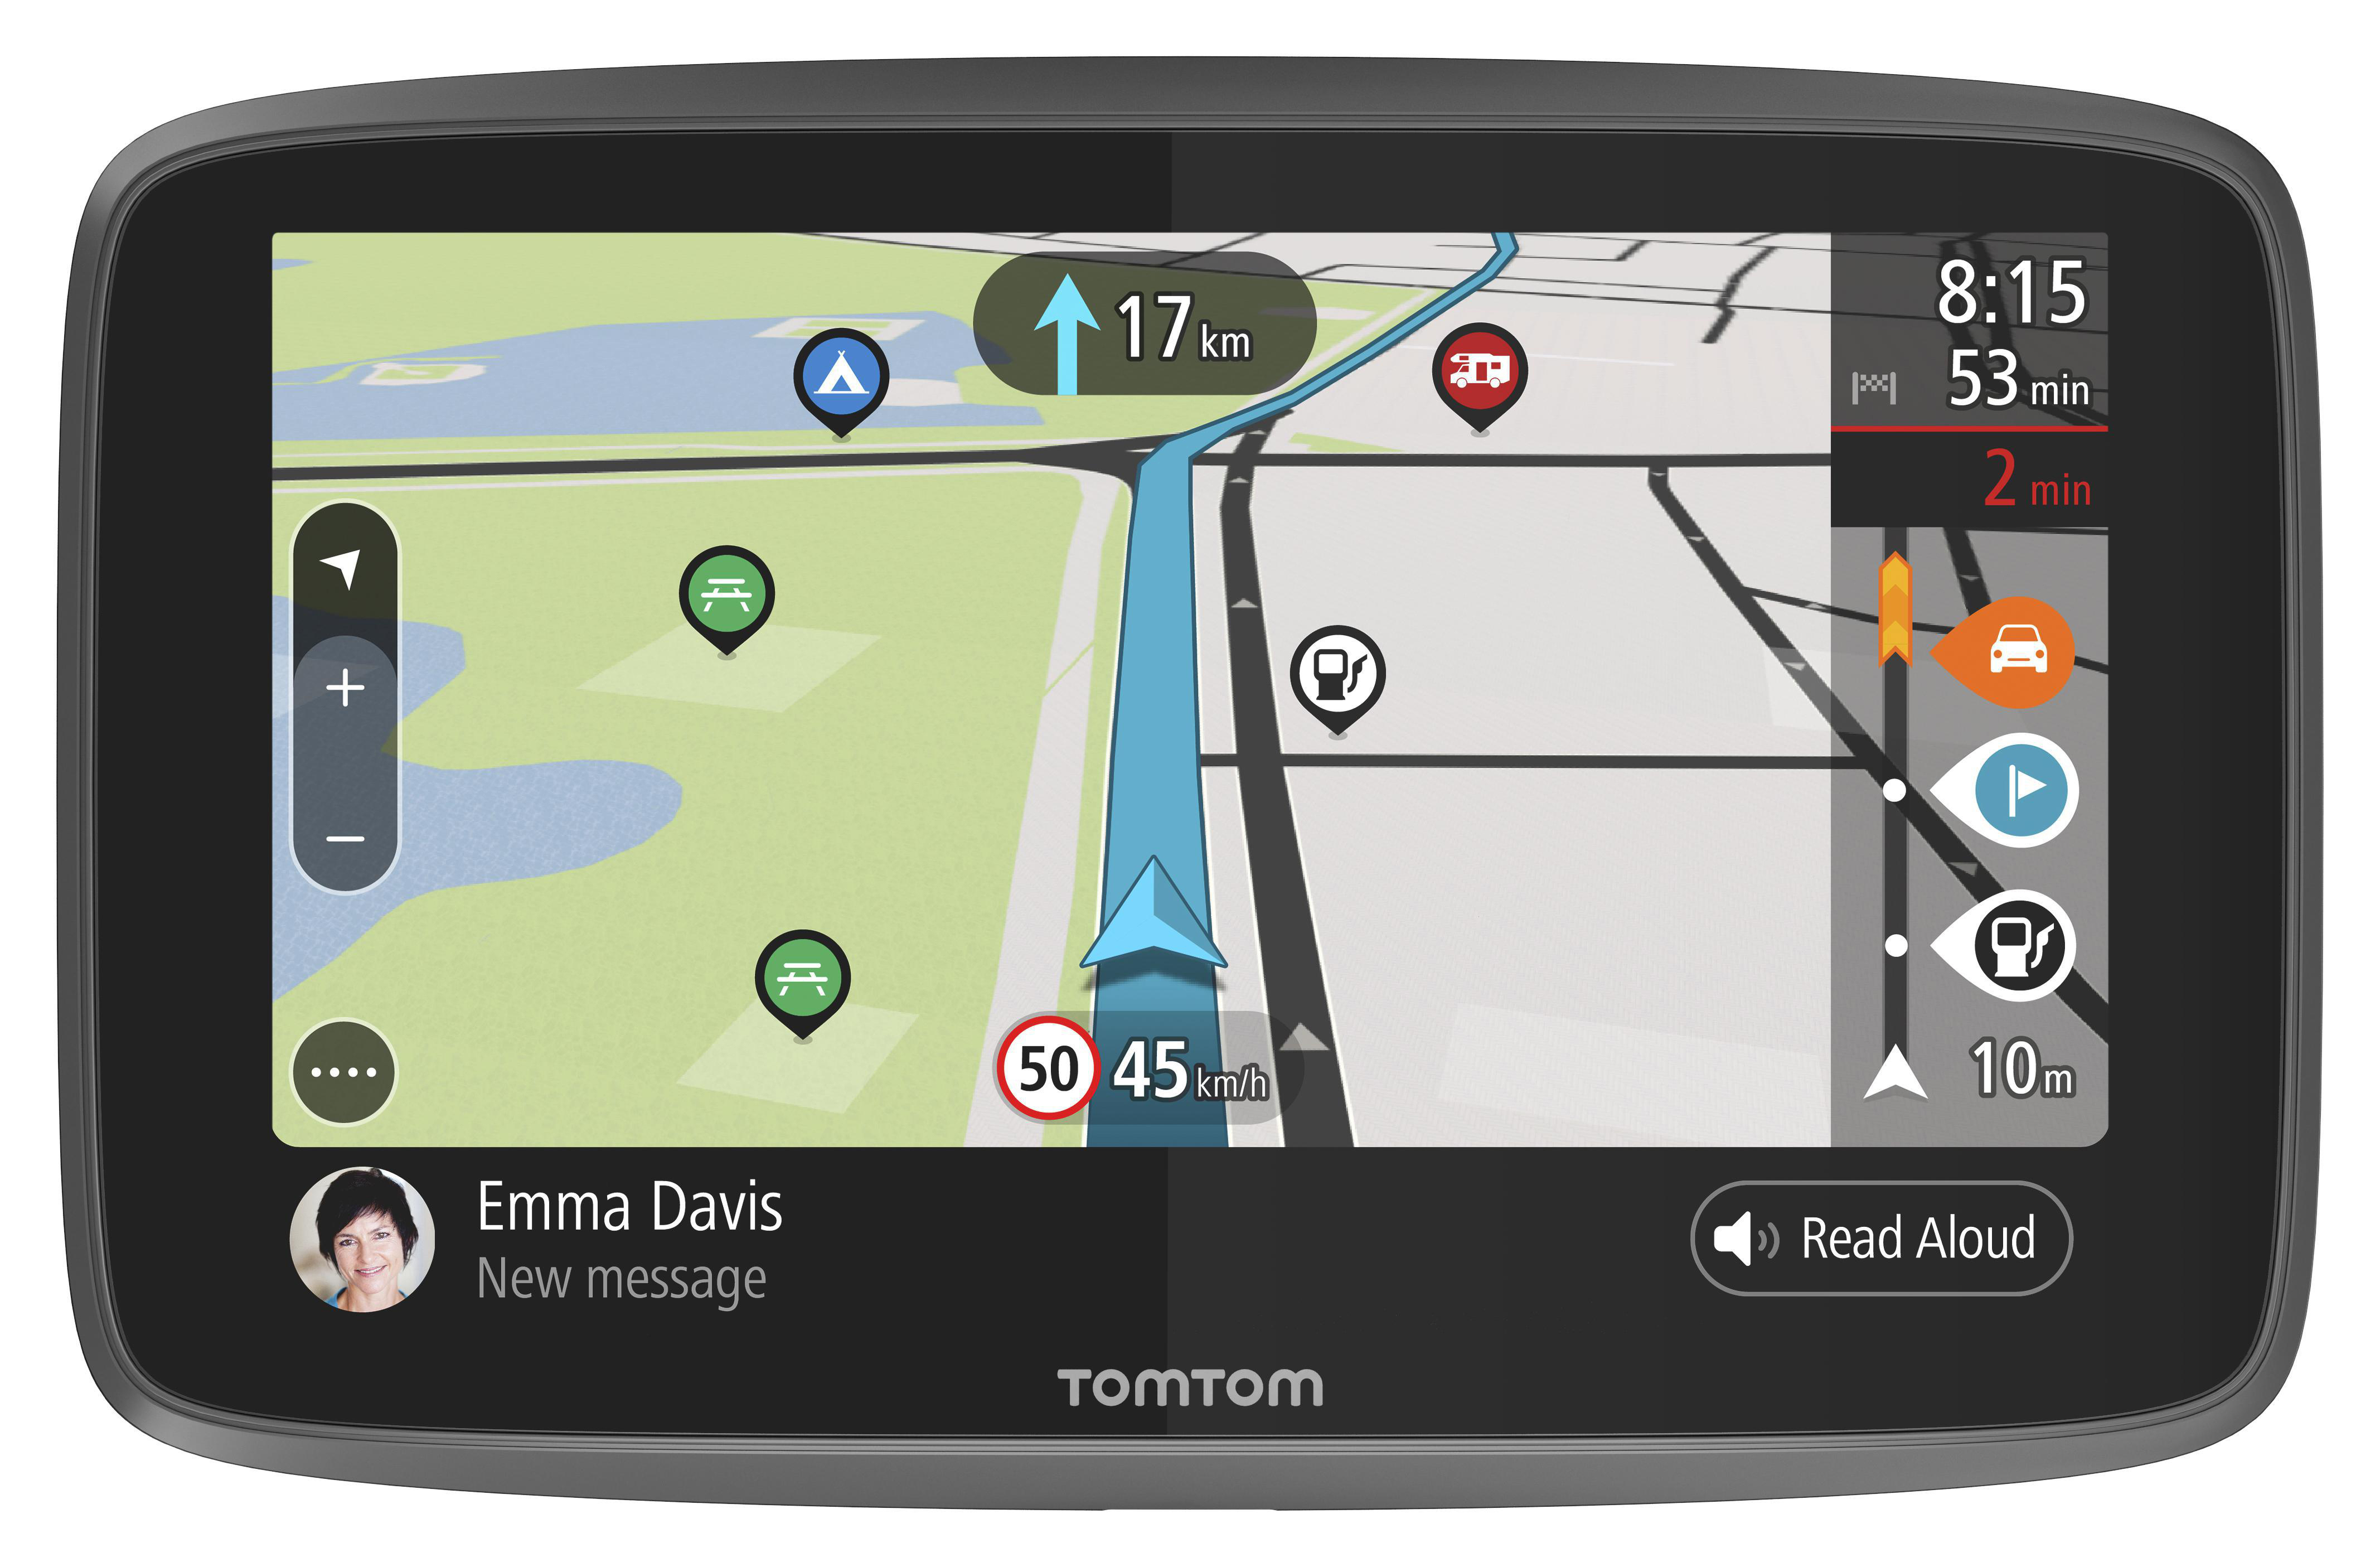 TomTom Camping Navigationsgerät GO Trips) Wohnwagen, über Sonderziele und Wi-Fi, Road Wohnmobile für Karten-Updates Camper TomTom Zoll, (6 Updates Welt